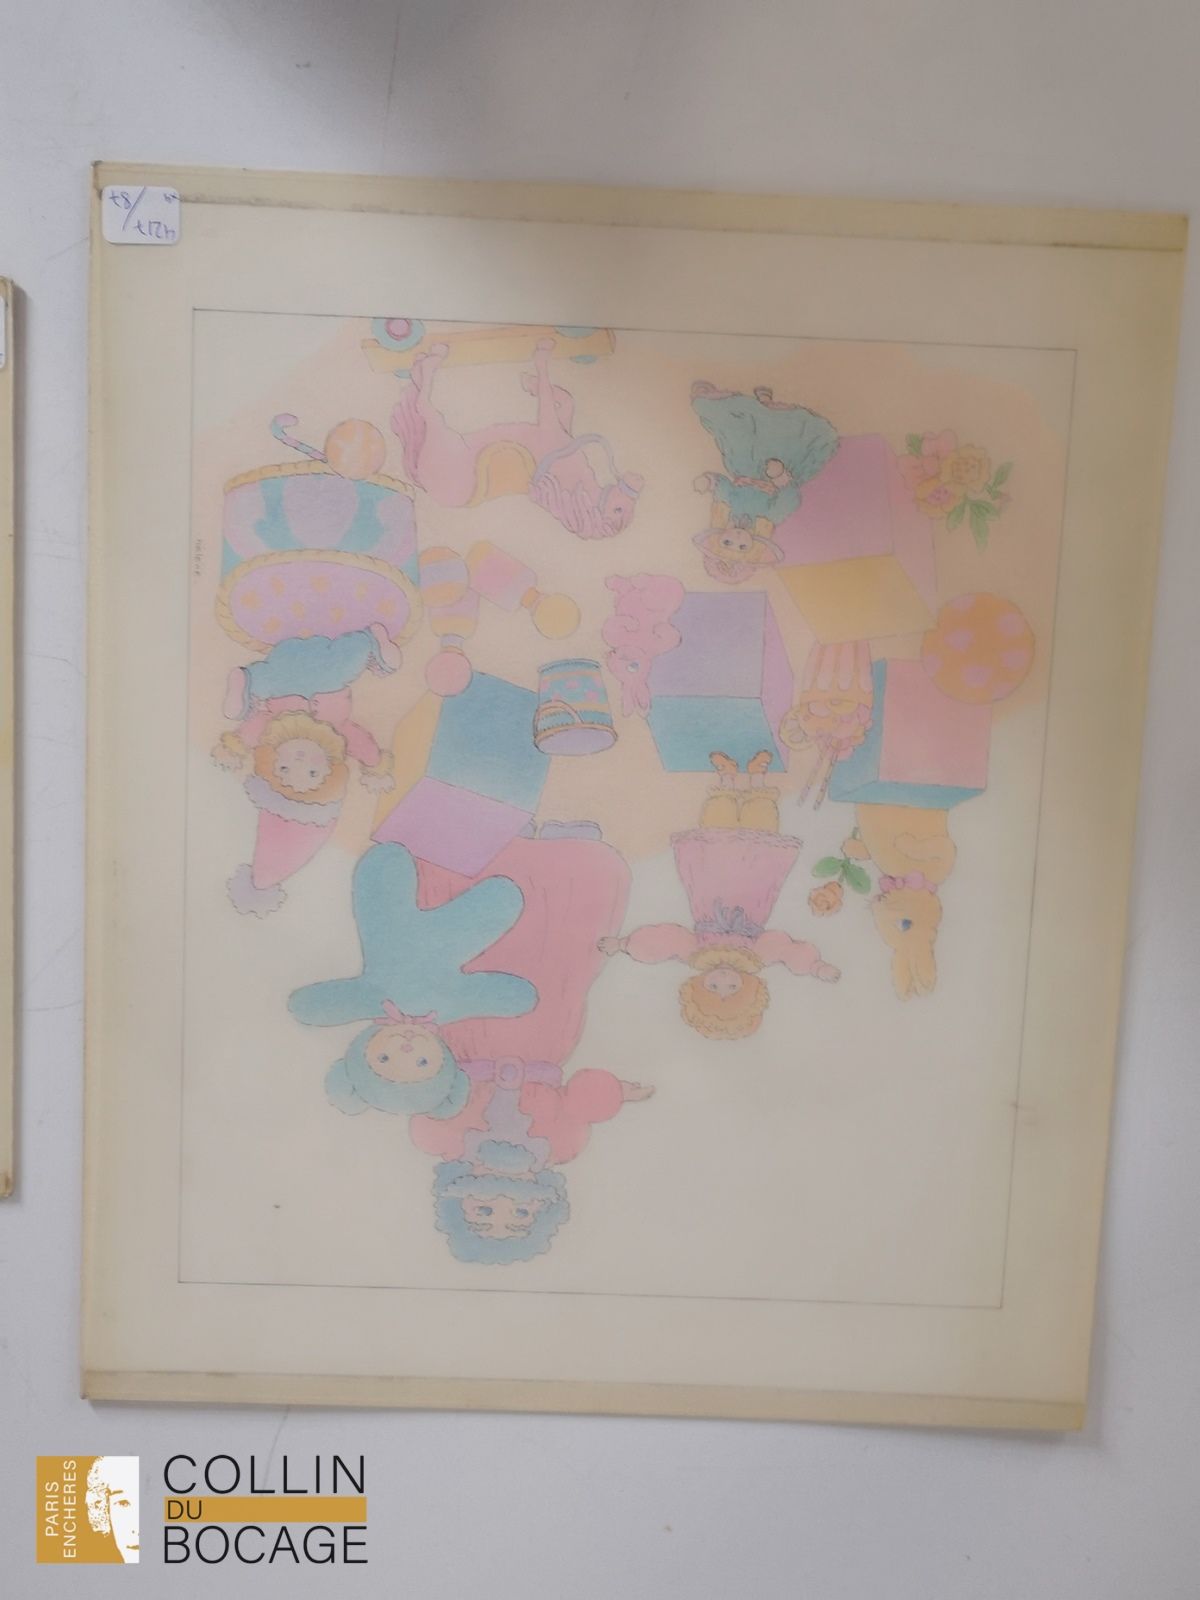 Null 插图
埃莱娜-布罗歇（1948-2023） 

动画人物 
纸上墨水、铅笔和水彩画，右下方有签名 
30 x 26 厘米 

糕点店的三胞胎 
纸面水&hellip;